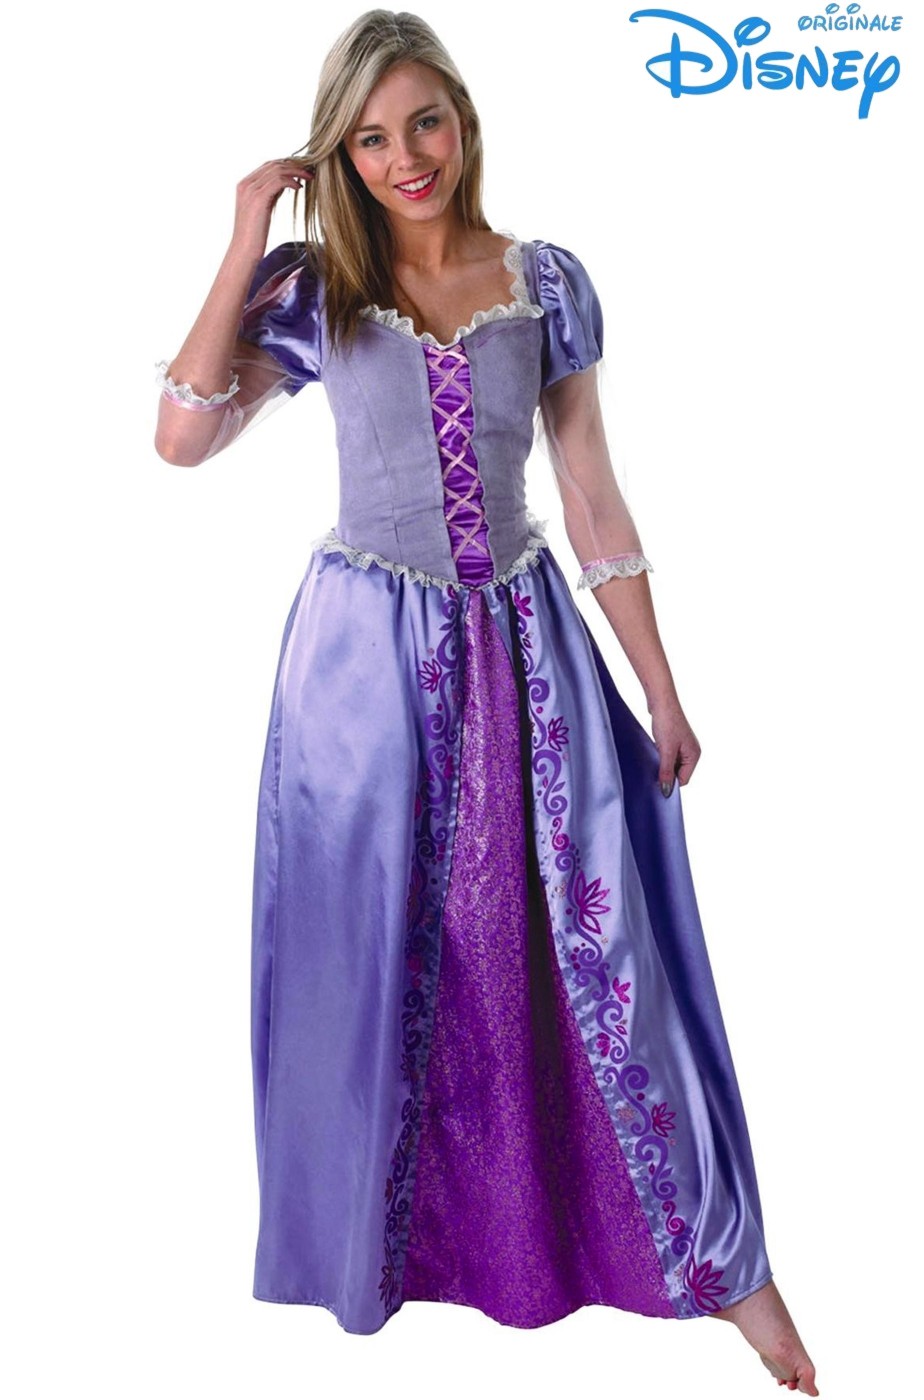 Il costume costumi originale della principessa Disney Rapunzel raperonzolo